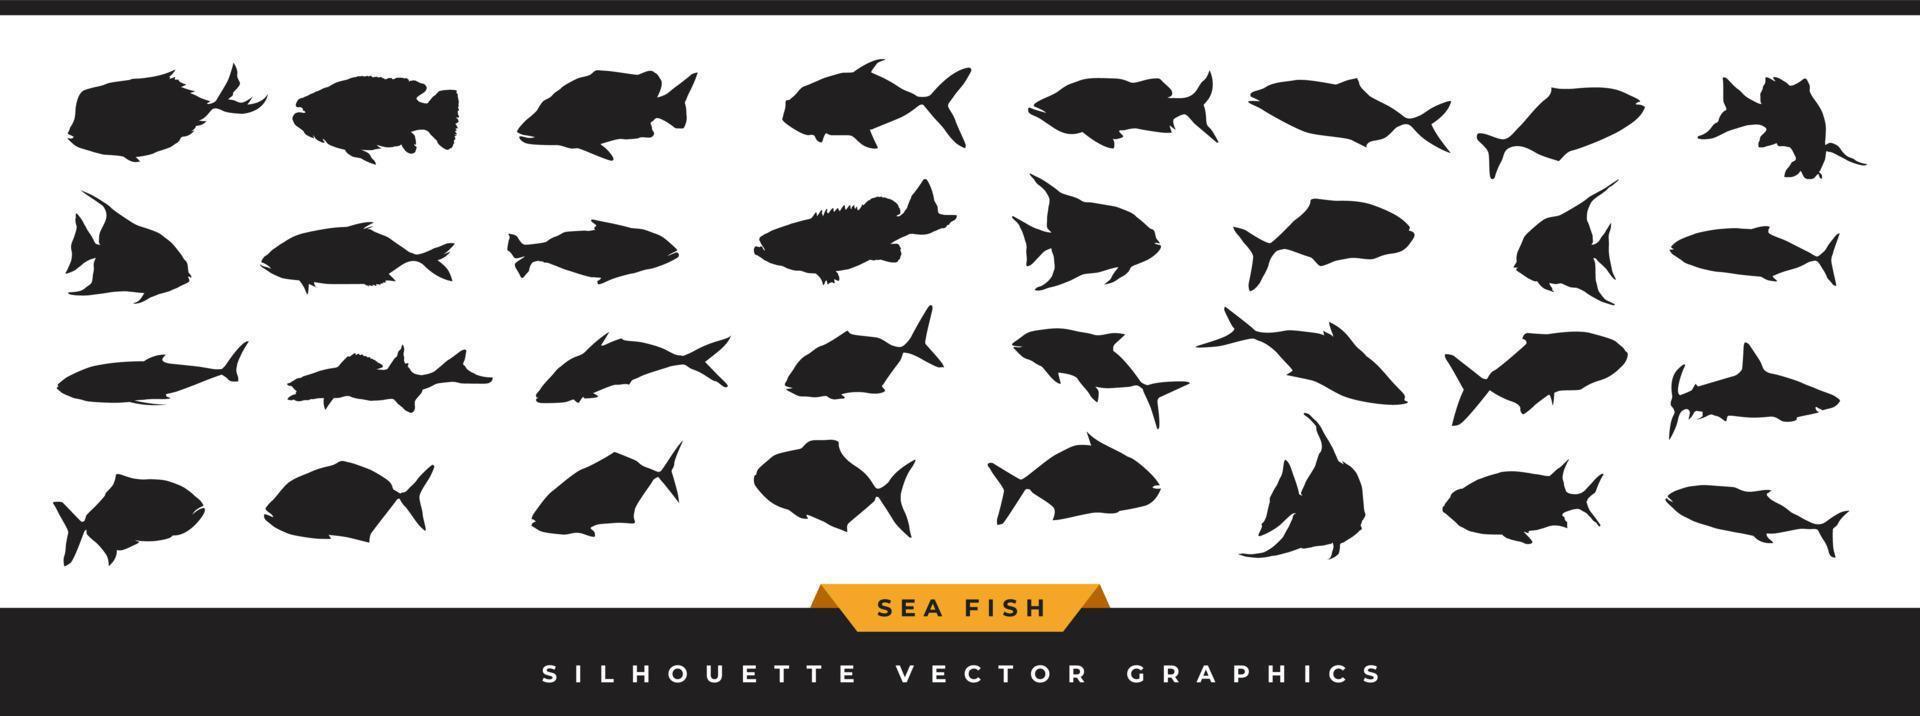 silhueta de peixe do mar. coleção de silhueta de peixes do oceano. conjunto de ícones de vetor de animais marinhos desenhados à mão são ilustrados em diferentes poses isoladas no fundo branco.